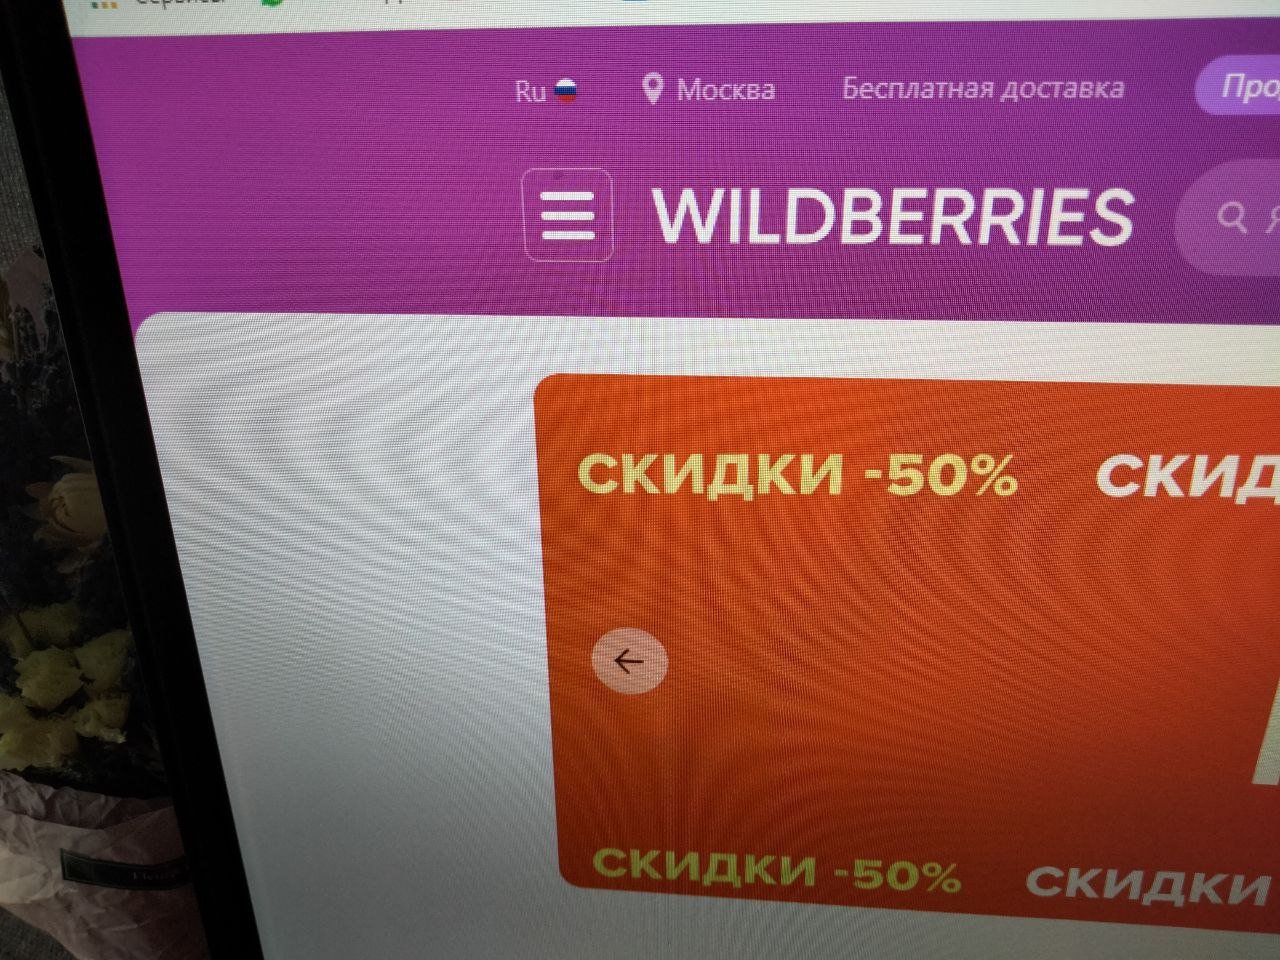 Жители России второй день жалуются на сбой в работе Wildberries 